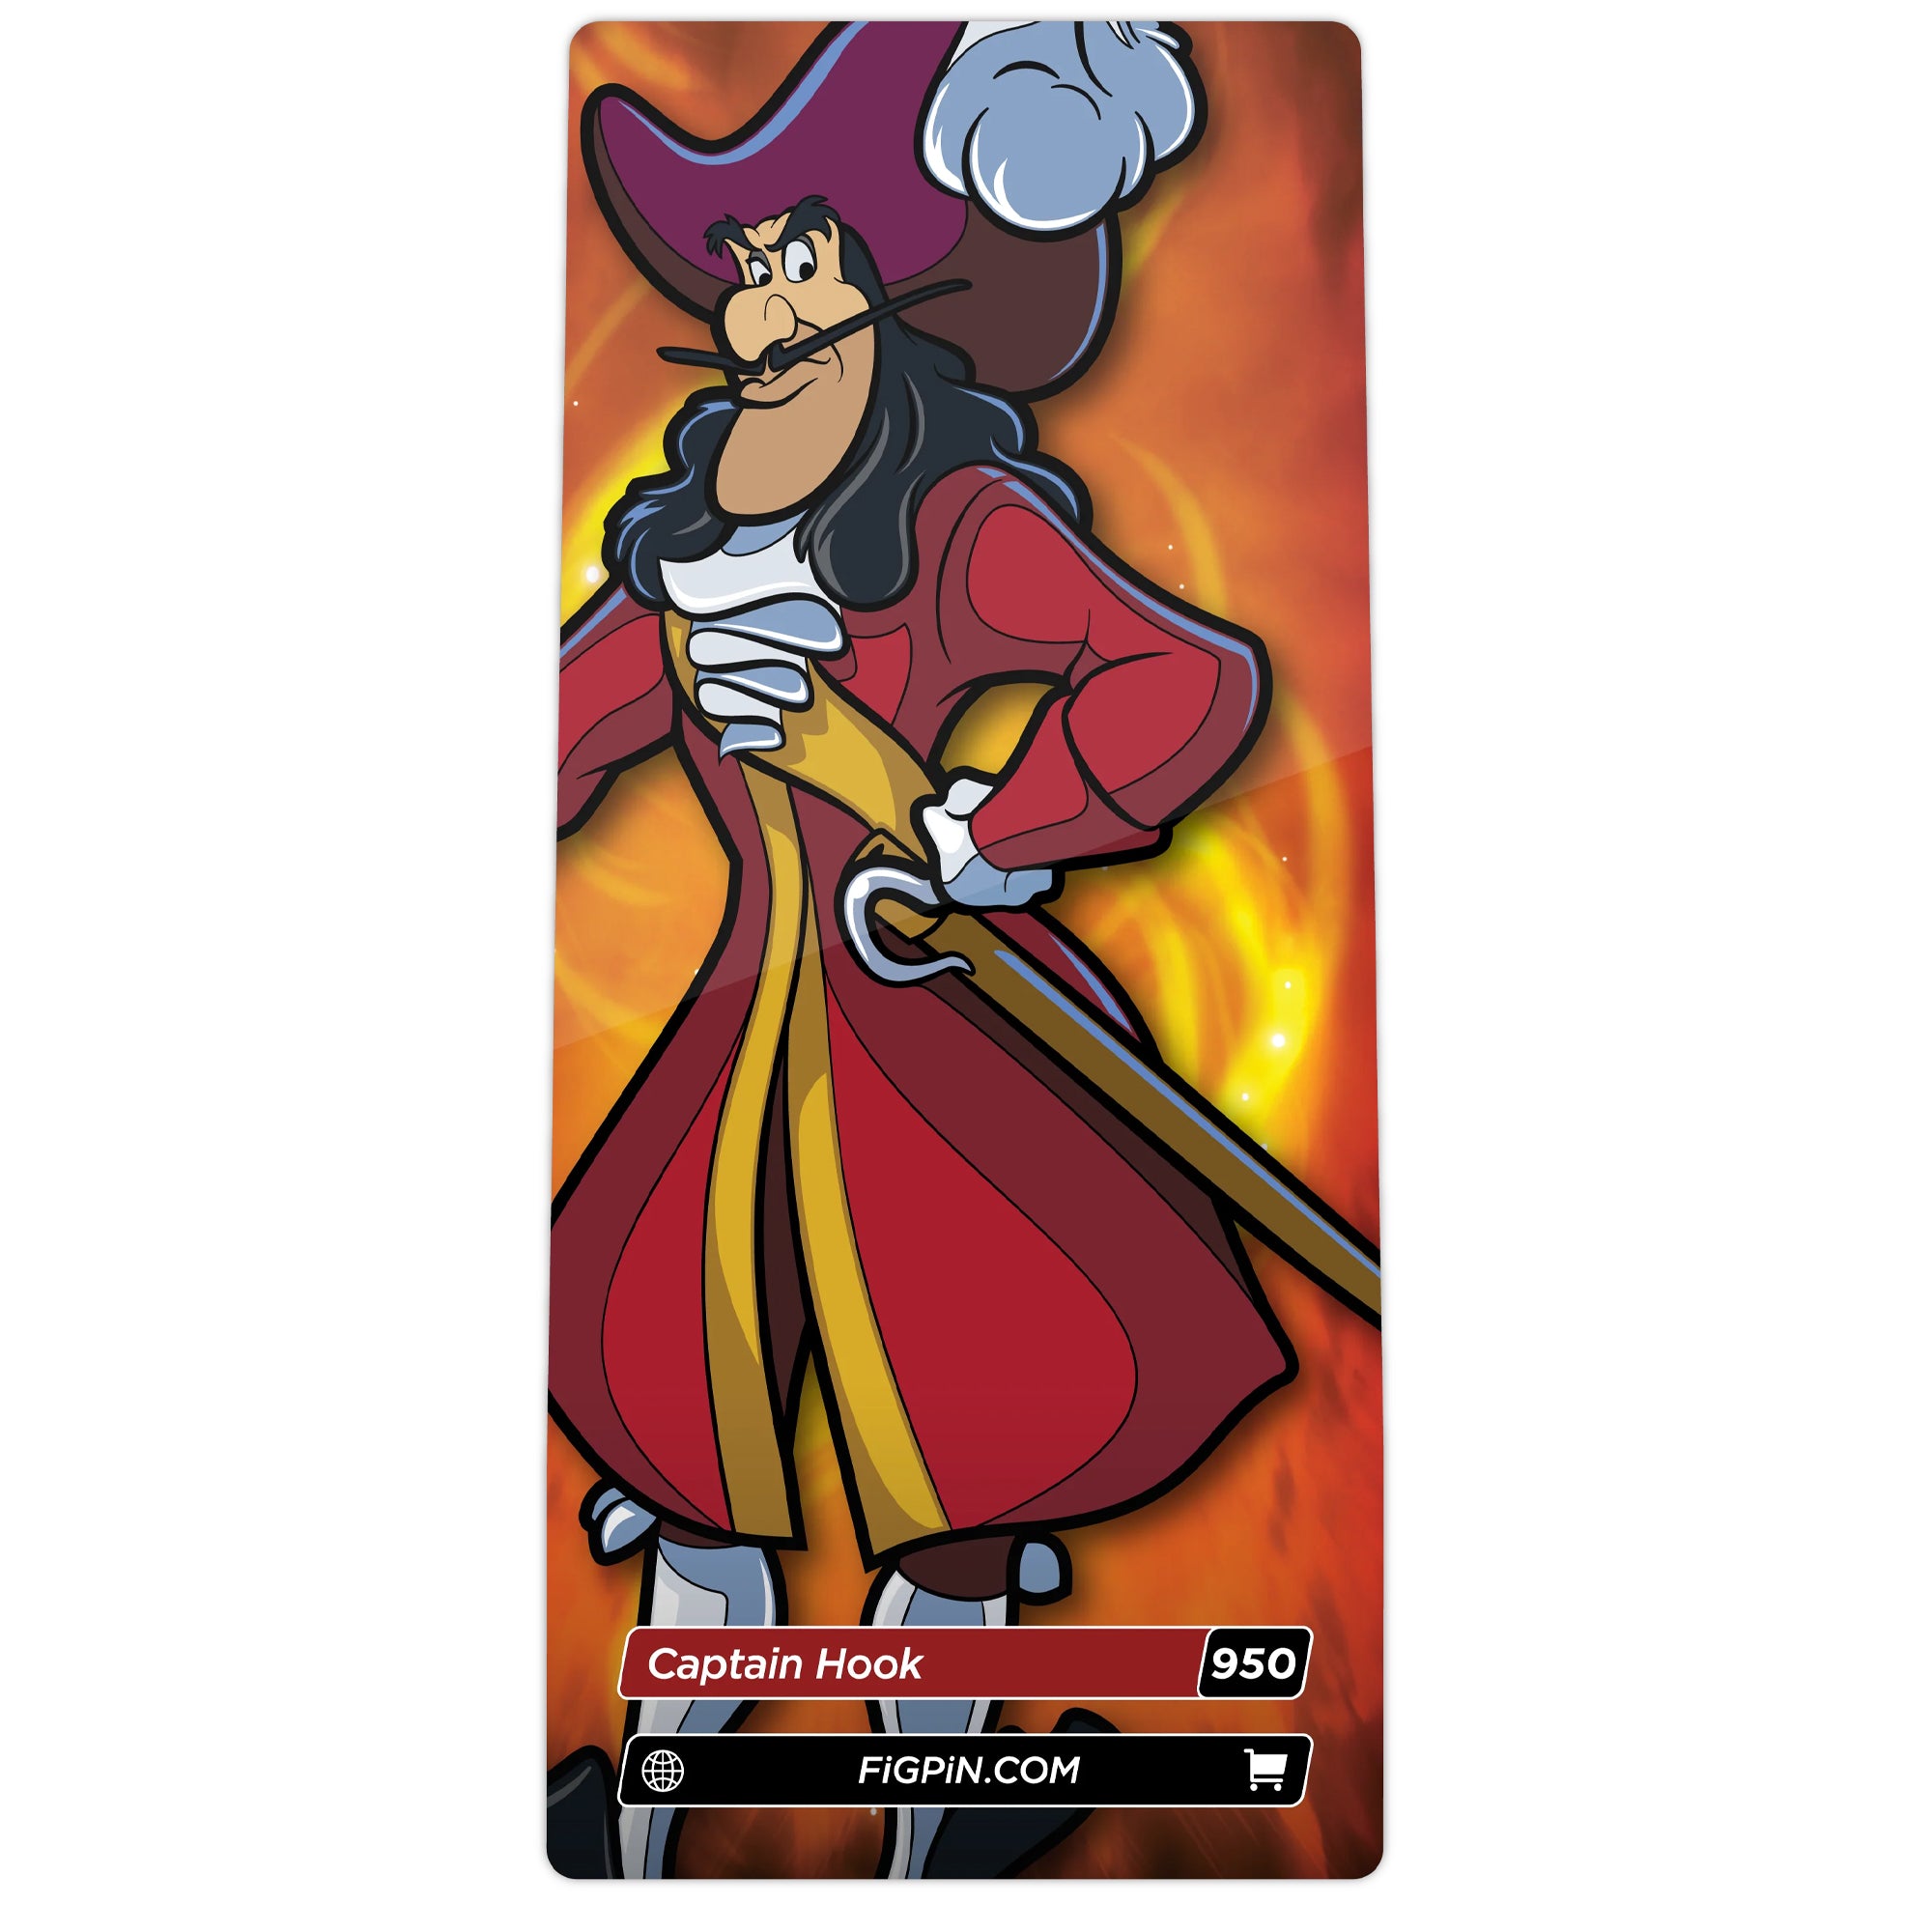 Disney Villains Captain Hook 3" Collectible Pin #950